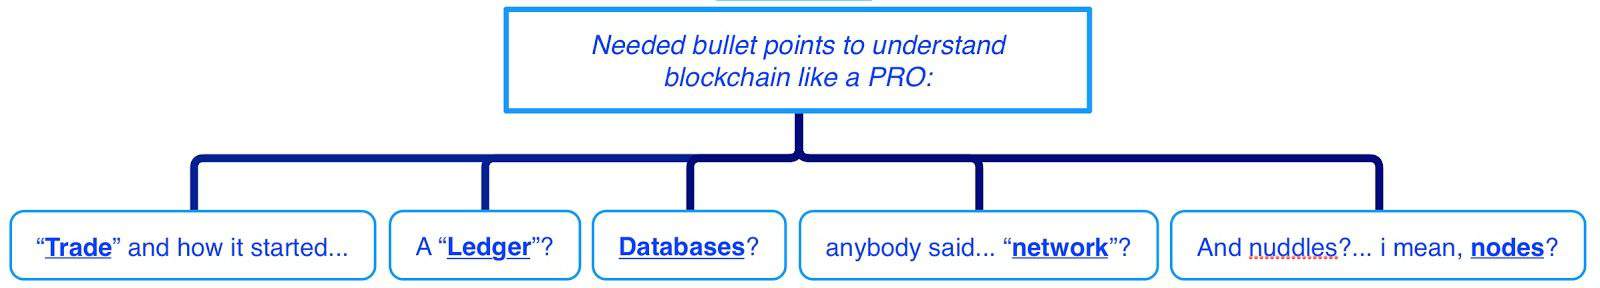 blockchain-diagram bullet points